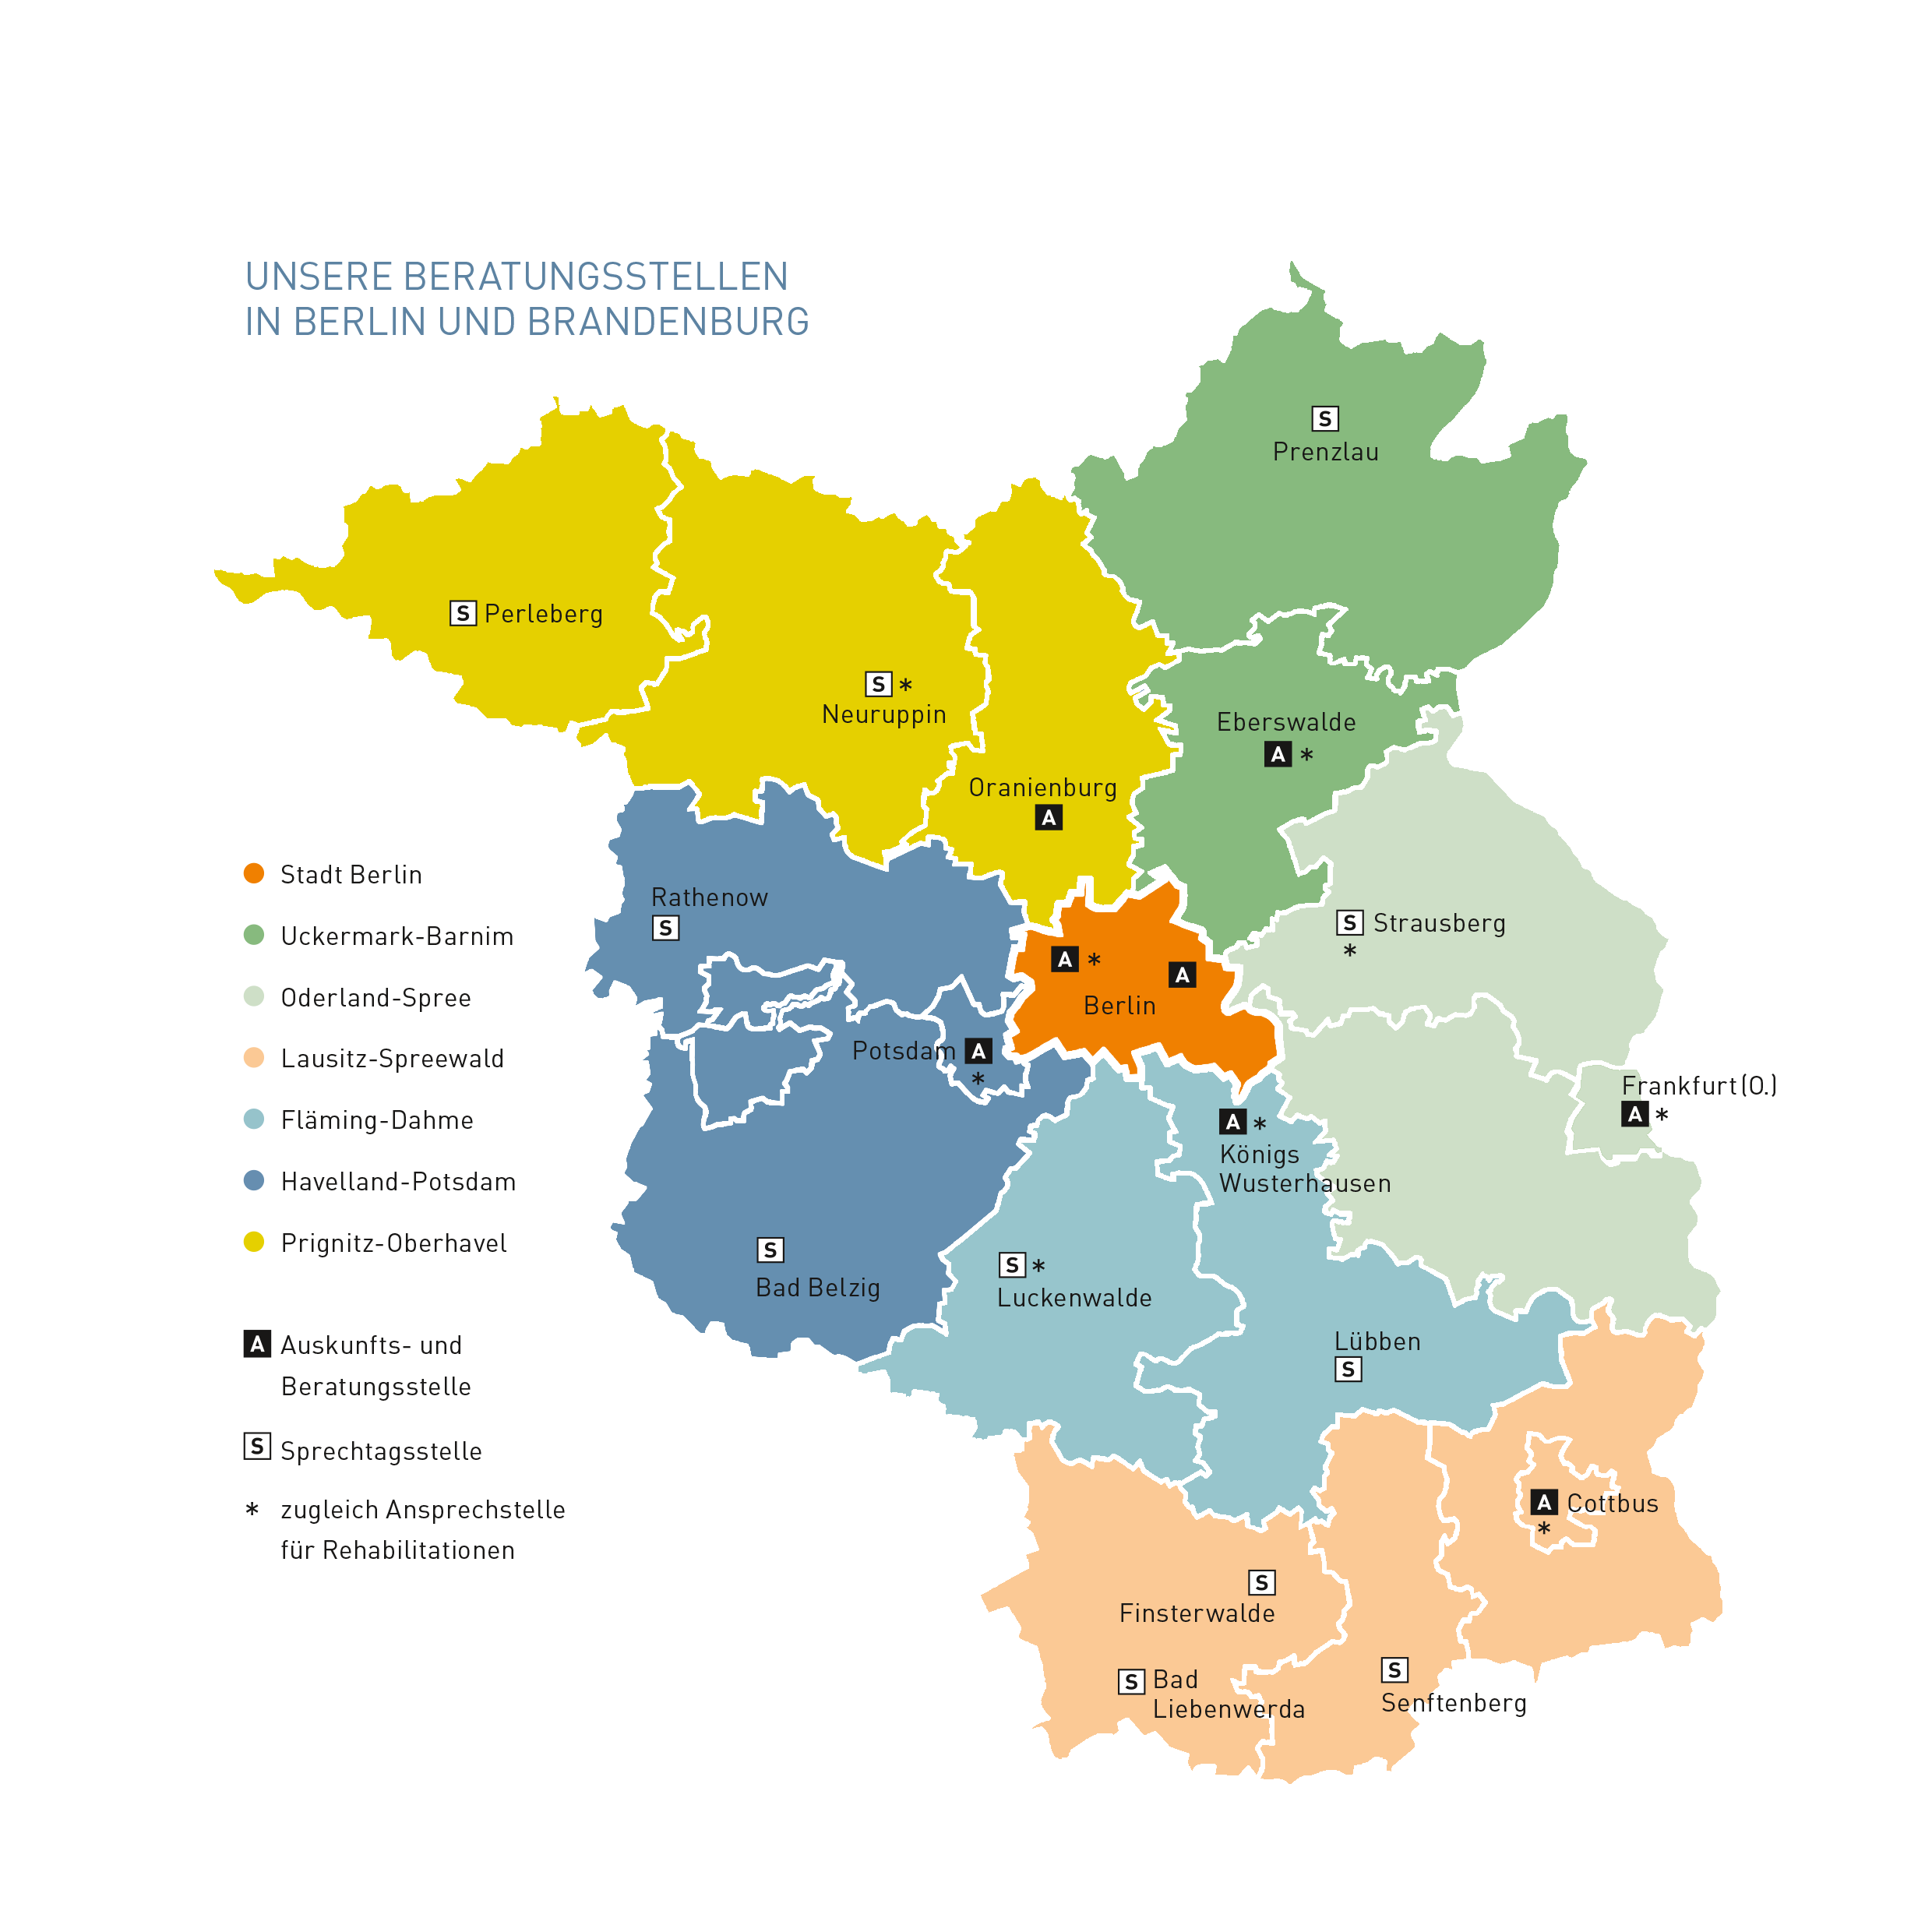 Karte der Auskunfts- und Beratungsstellen der Deutschen Rentenversicherung Berlin-Brandenburg